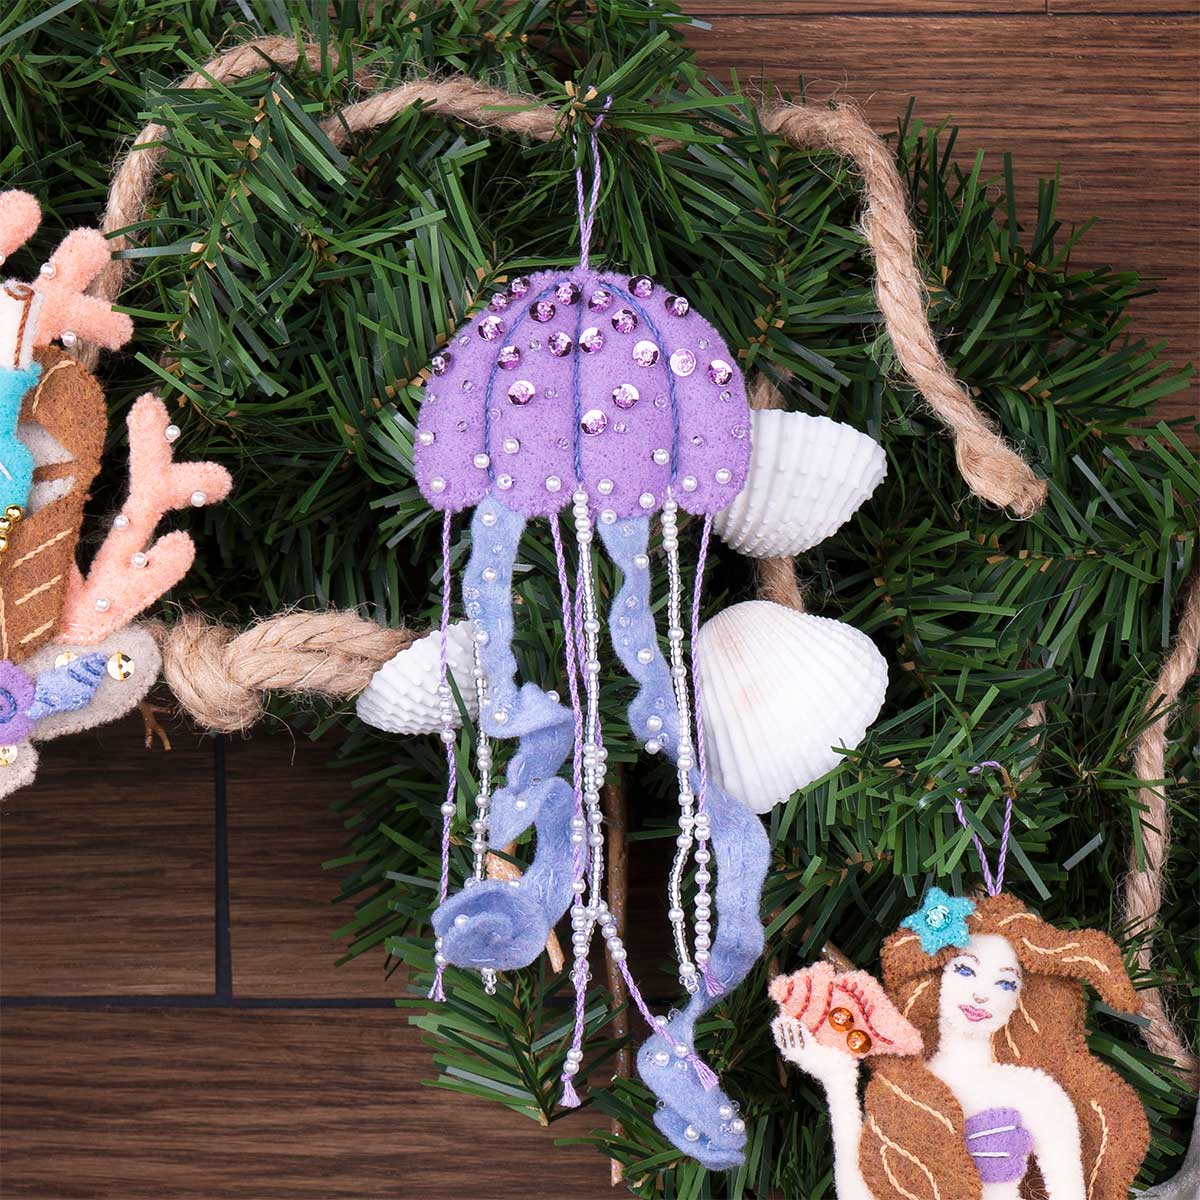 Bucilla ® Seasonal - Felt - Ornament Kits - Sea Princess - 89269E